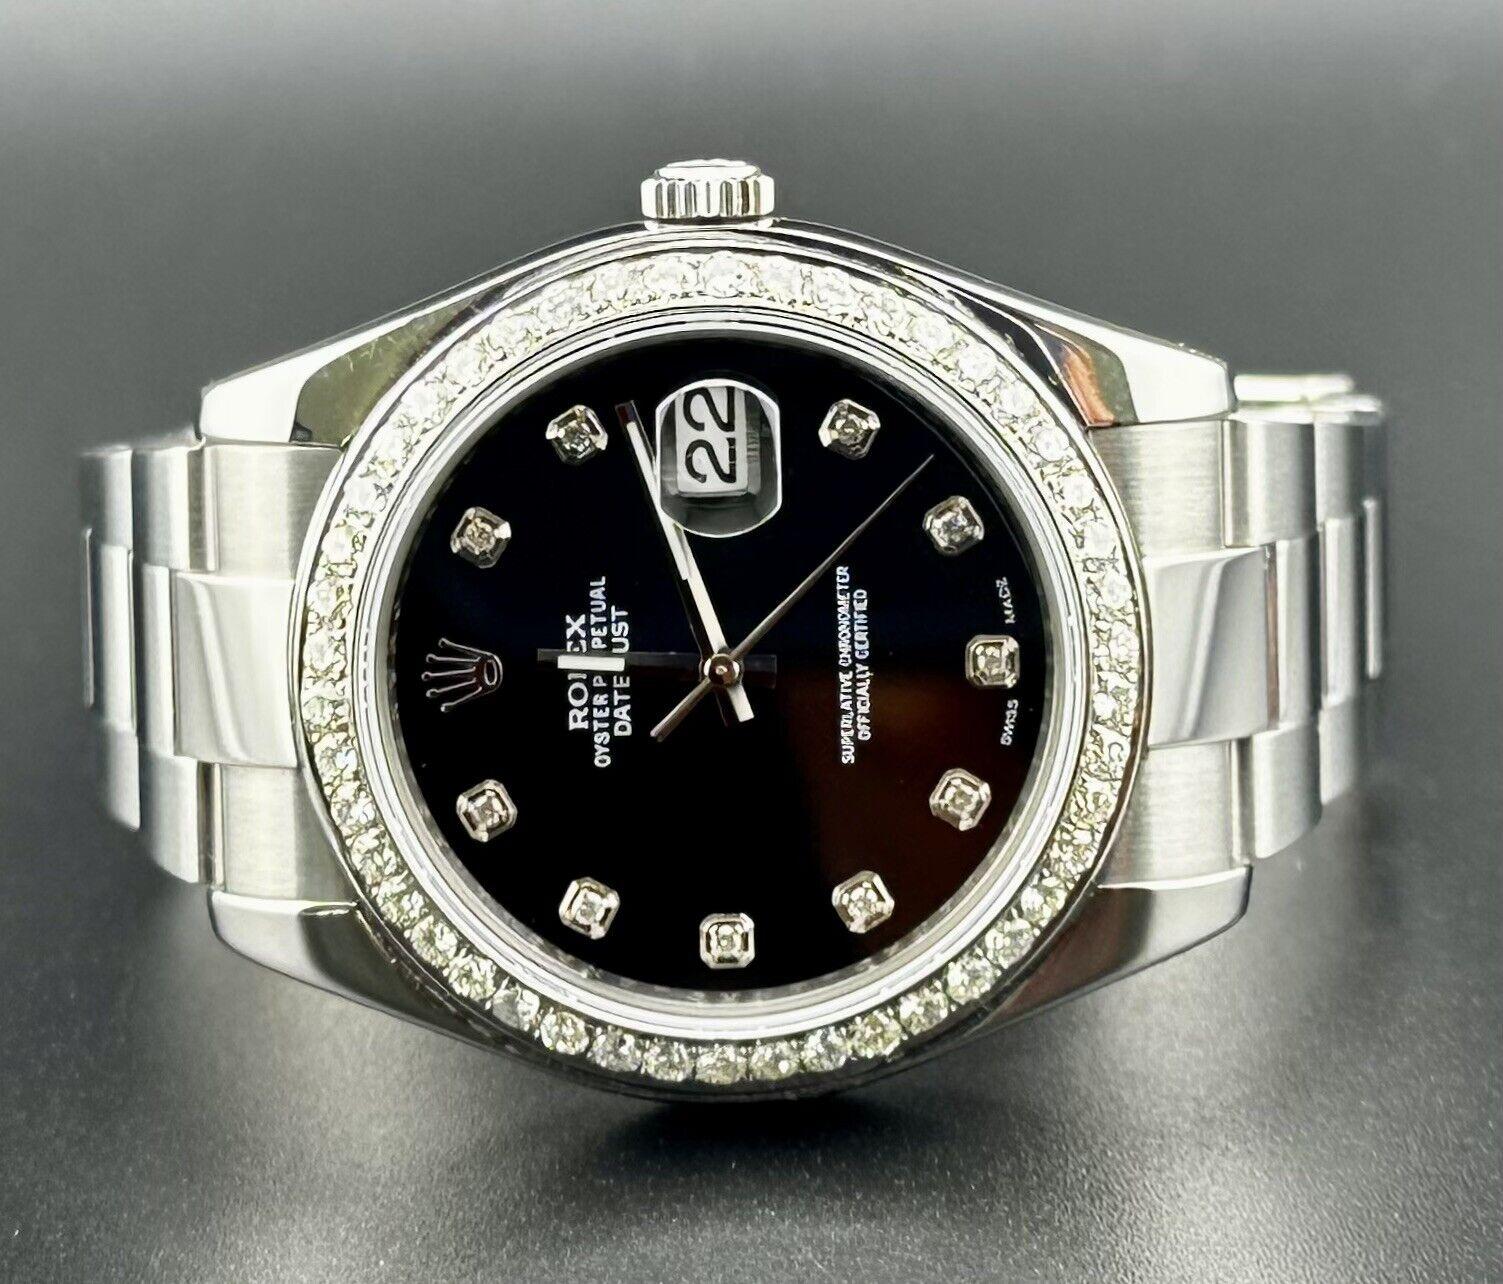 Montre Rolex Datejust 41mm. Une montre d'occasion avec boîte cadeau. La montre elle-même est authentique et est accompagnée d'une carte d'authenticité. La référence de la montre est 116300 et elle est en excellent état (voir photos). La couleur du